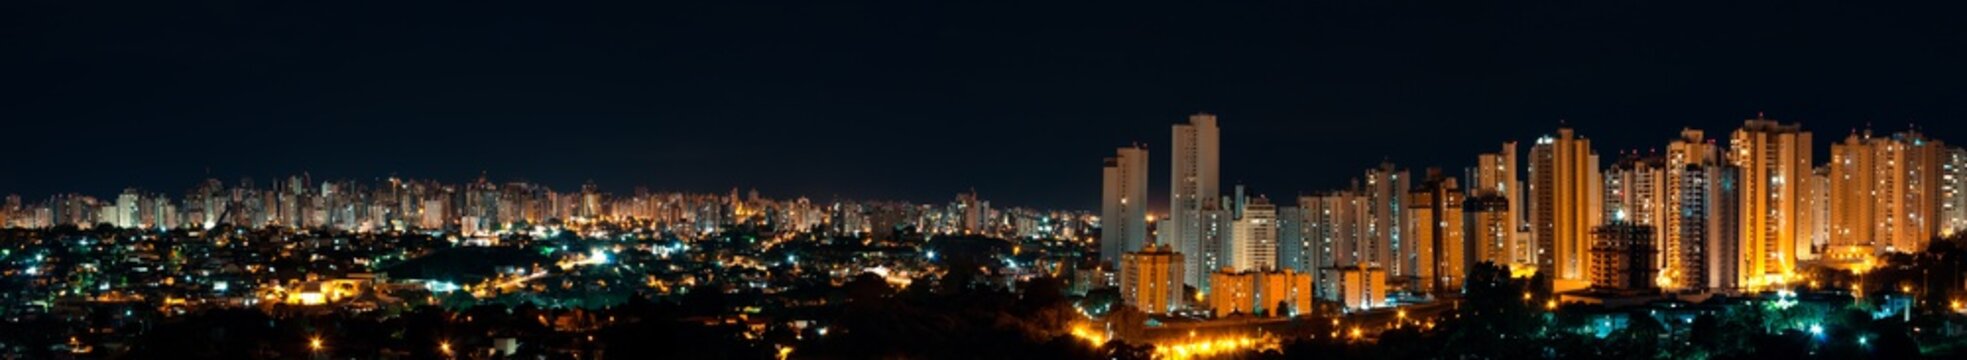 Panorama noturno - Londrina, PR